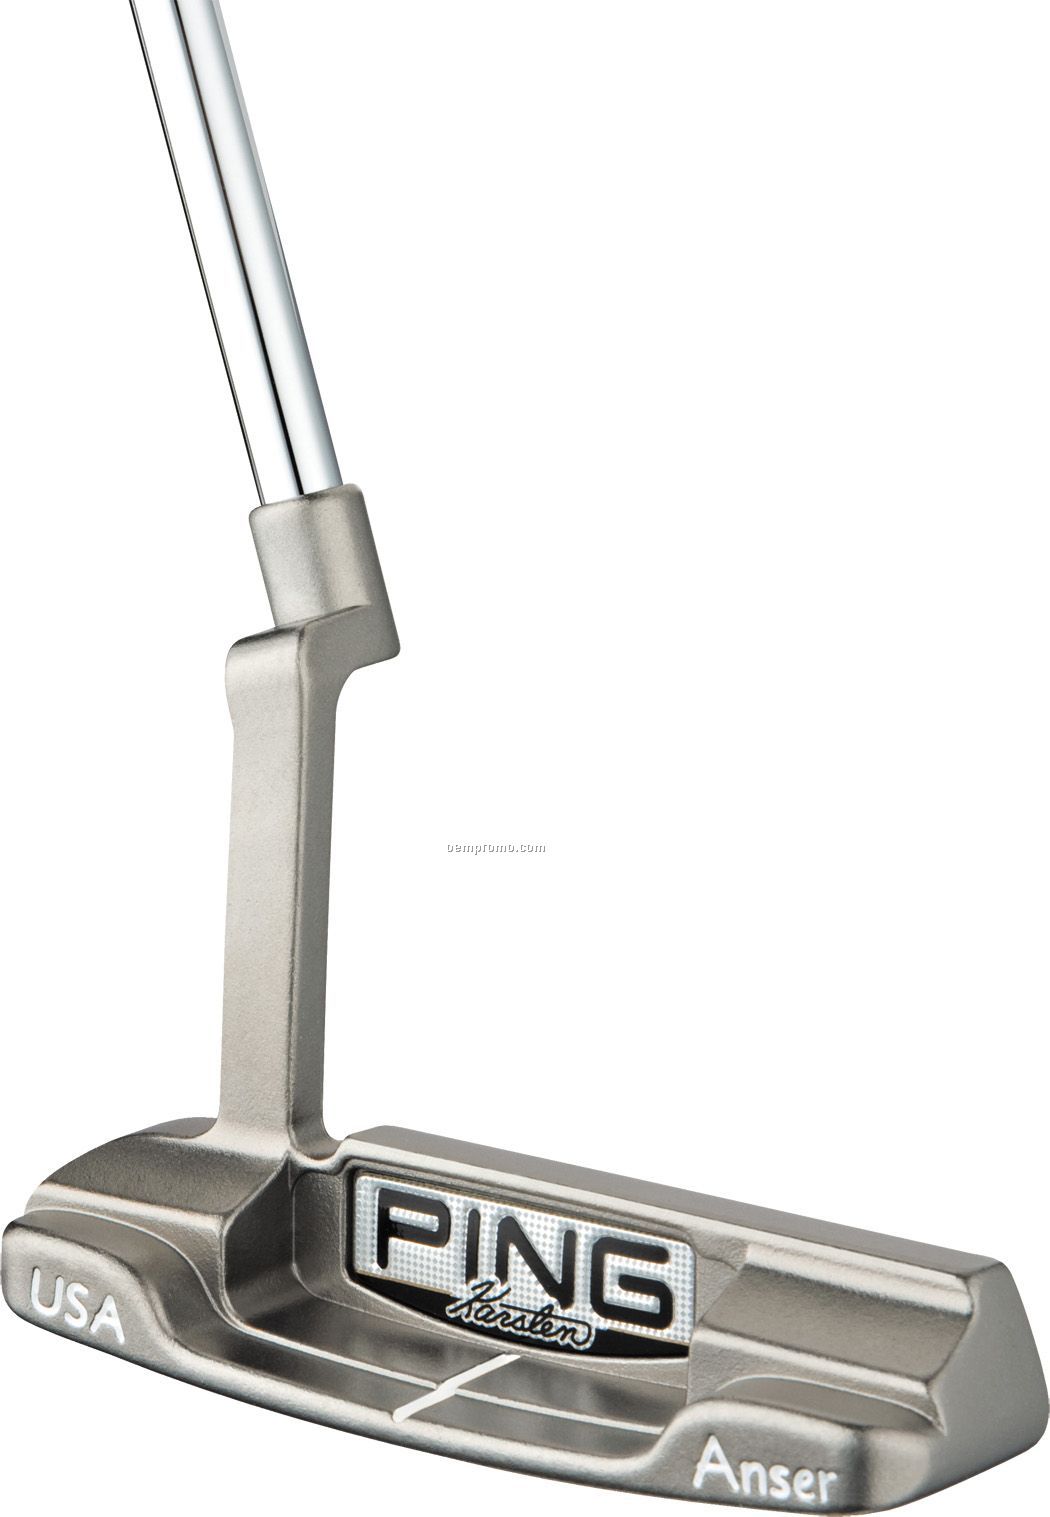 Ping Karsten Series Anser Golf Putter (2011) - 1-4 Color Logo